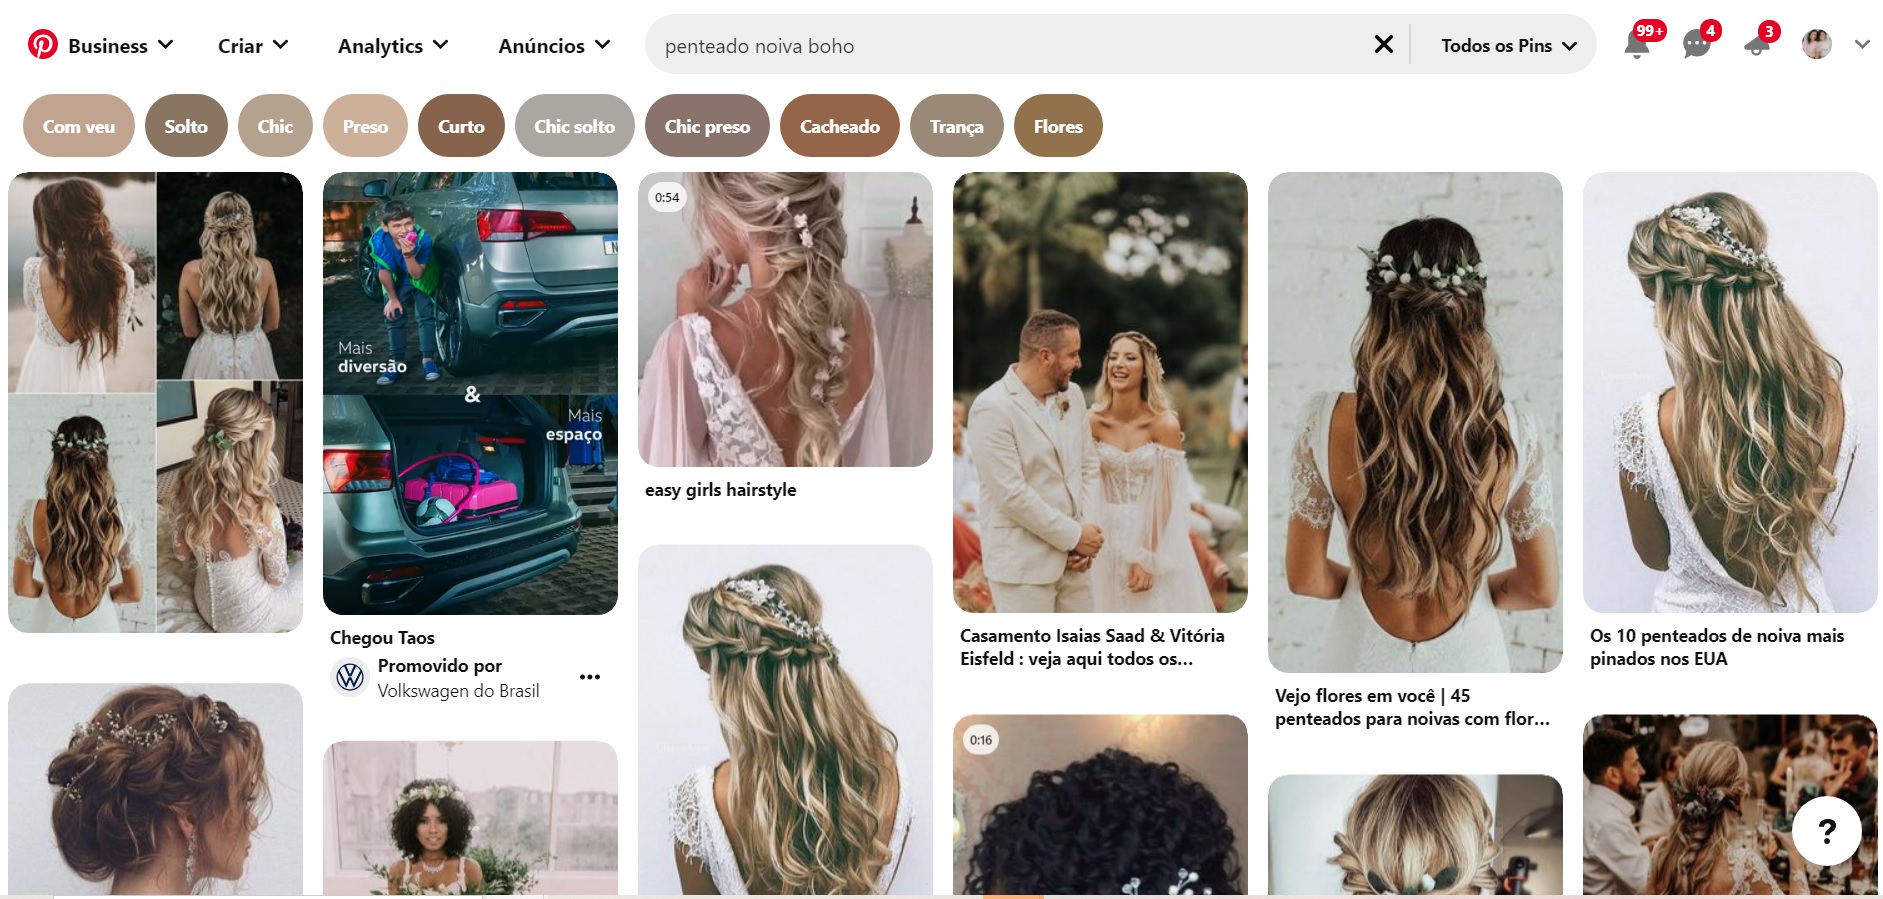 O que é Pinterest e muitas dicas de como usar para planejar e organizar seu casamento